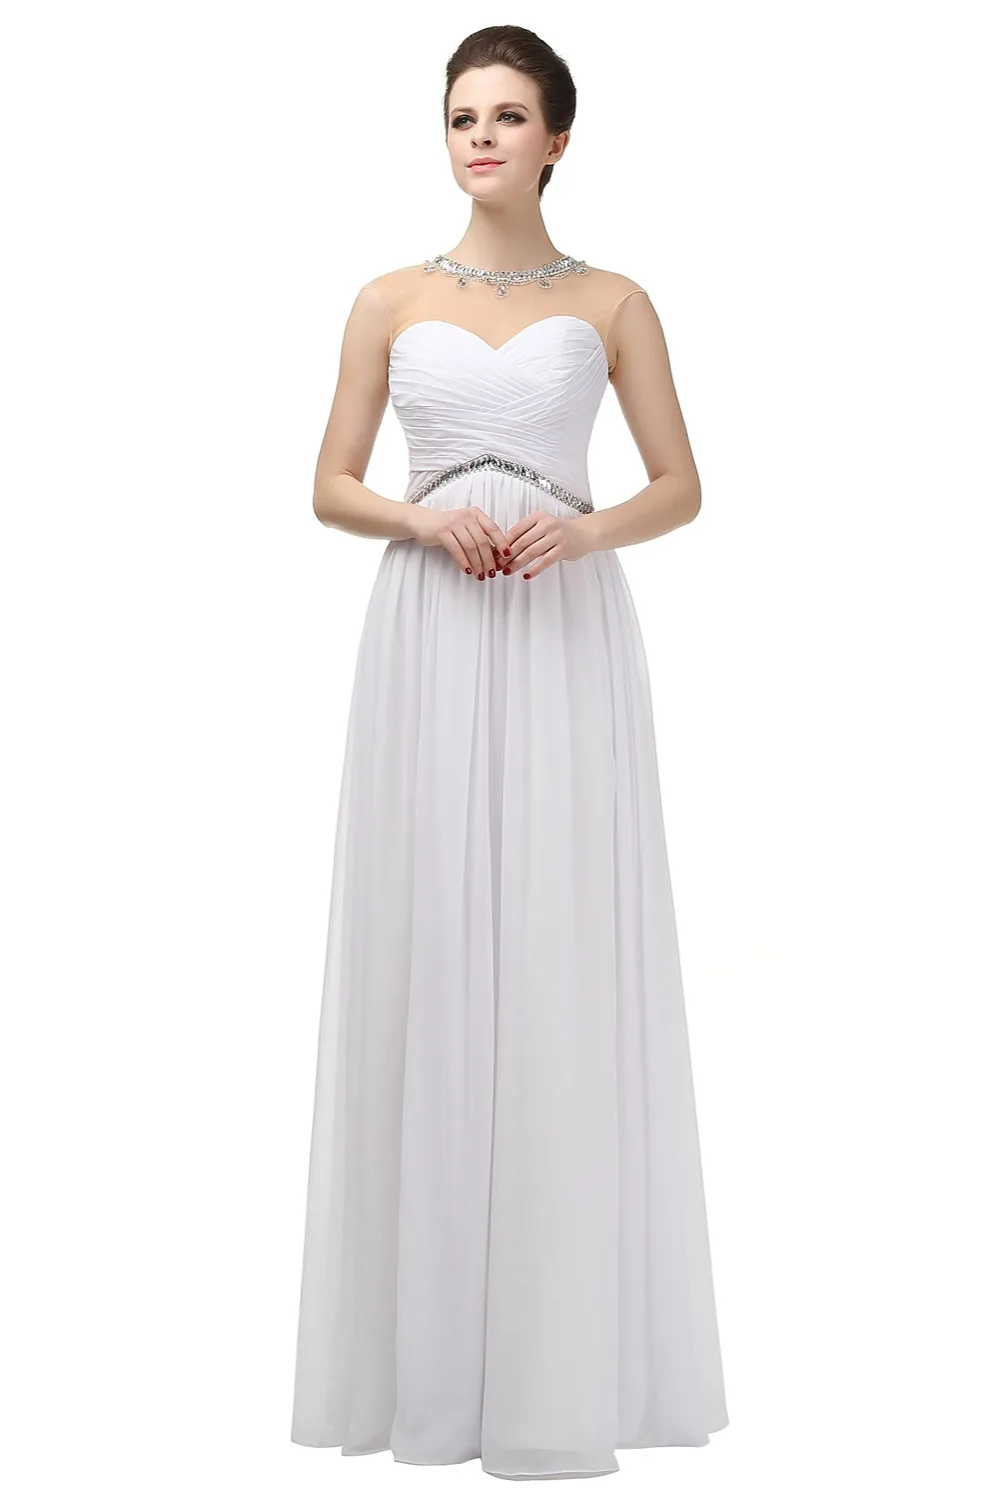 JaneVini 2018 синий длинное платье подружки невесты плюс Размеры Кристалл бисера Иллюзия женские вечерние платья шифоновое праздничное платье